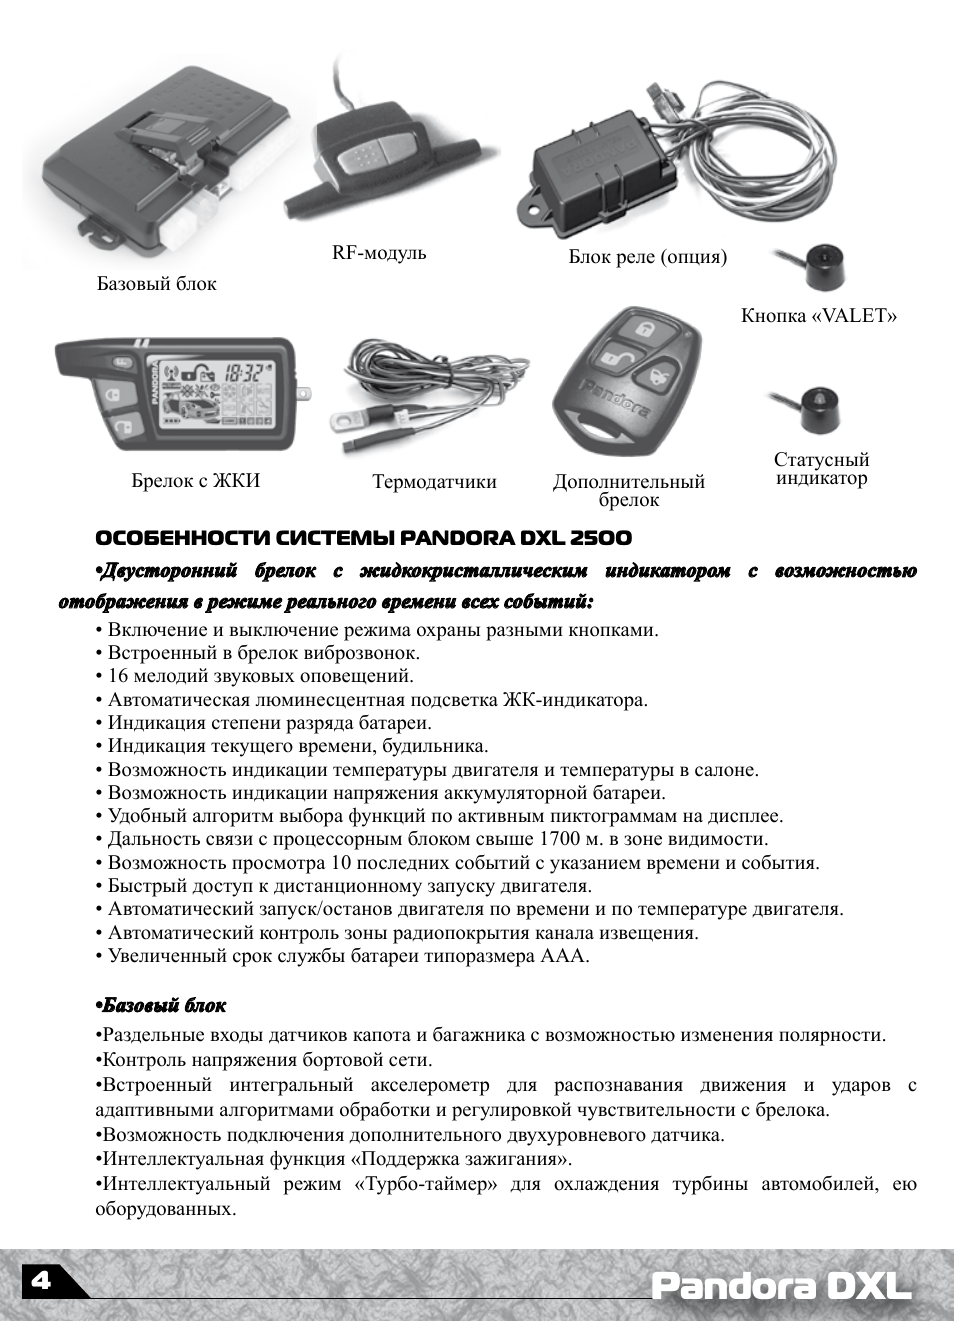 Обзор сигнализации pandora dxl 5000 new, инструкция, рекомендации по установке